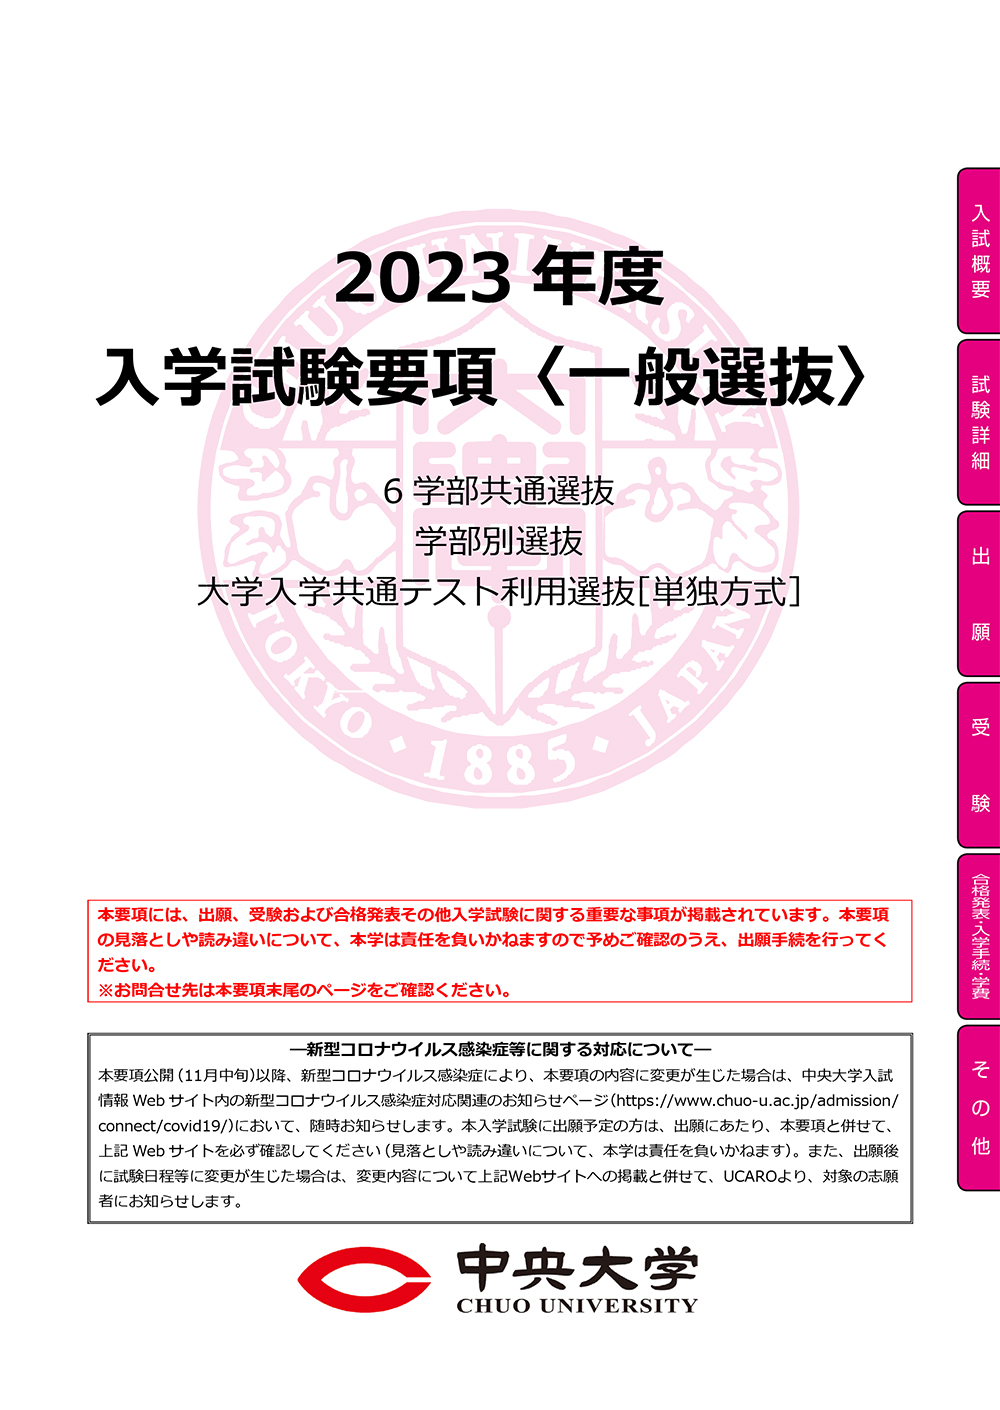 2023年度 入学試験要項<一般選抜>PDF